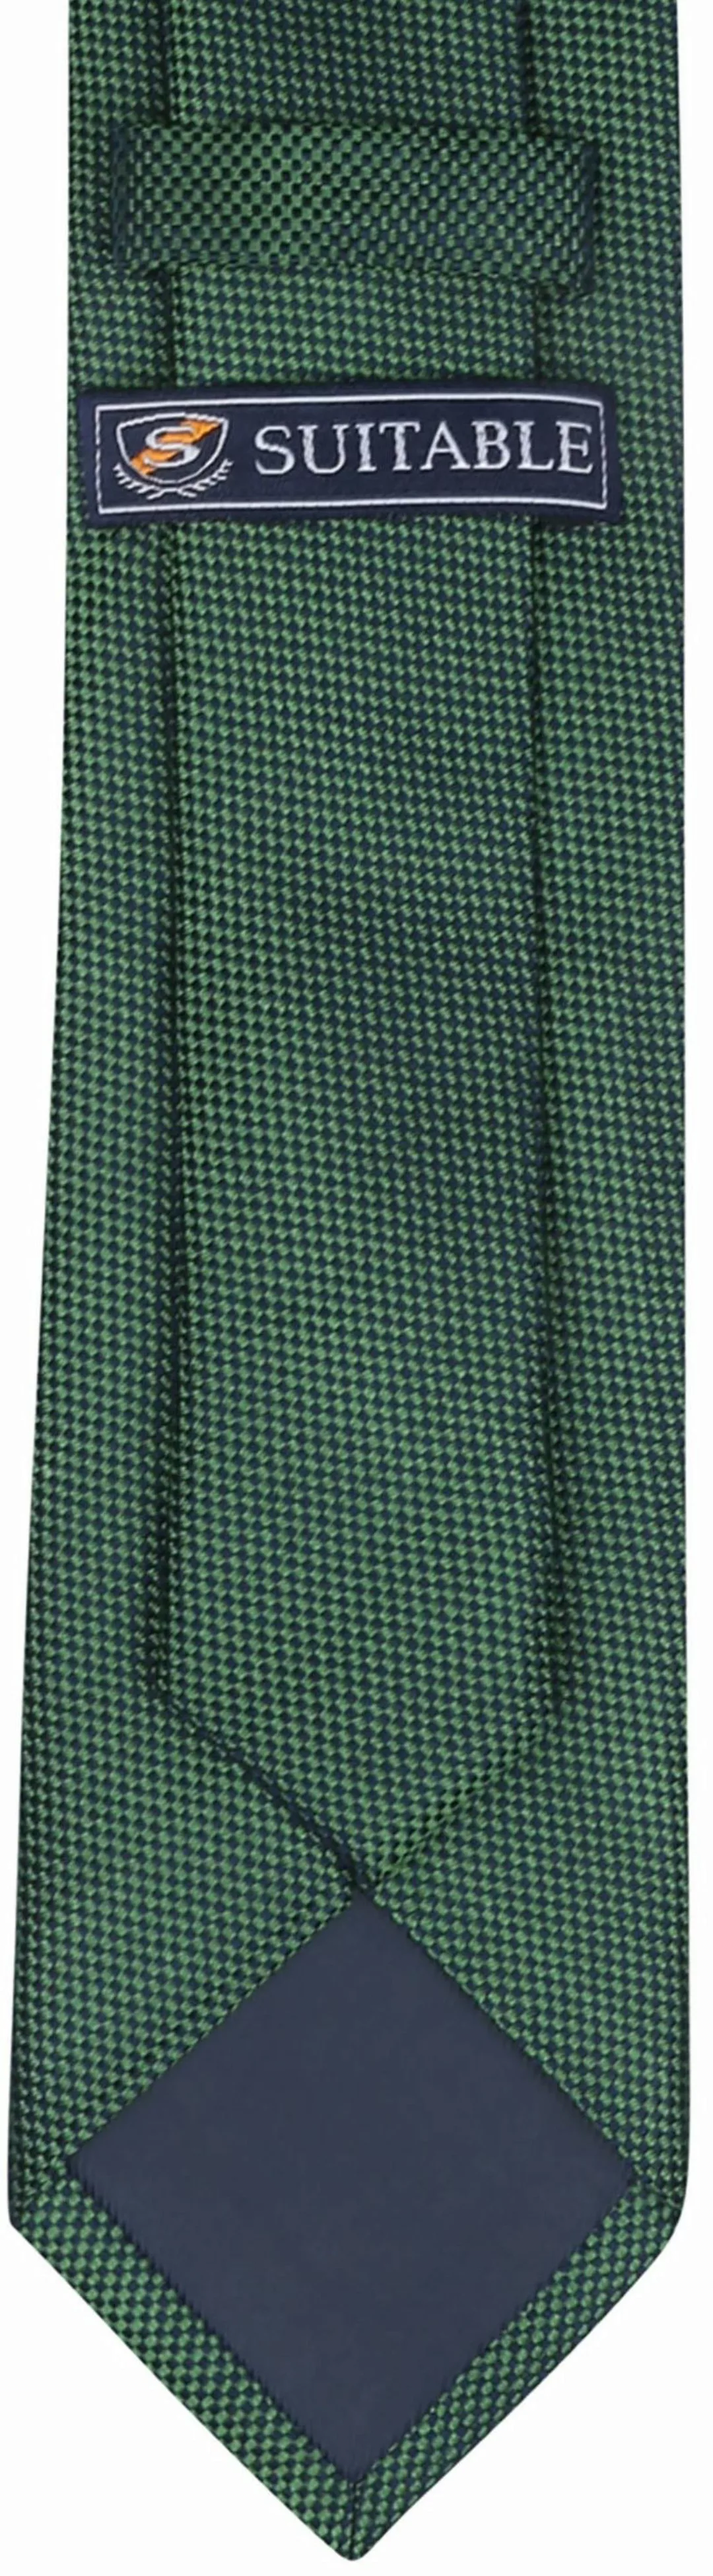 Suitable Seide Krawatte Grün - günstig online kaufen